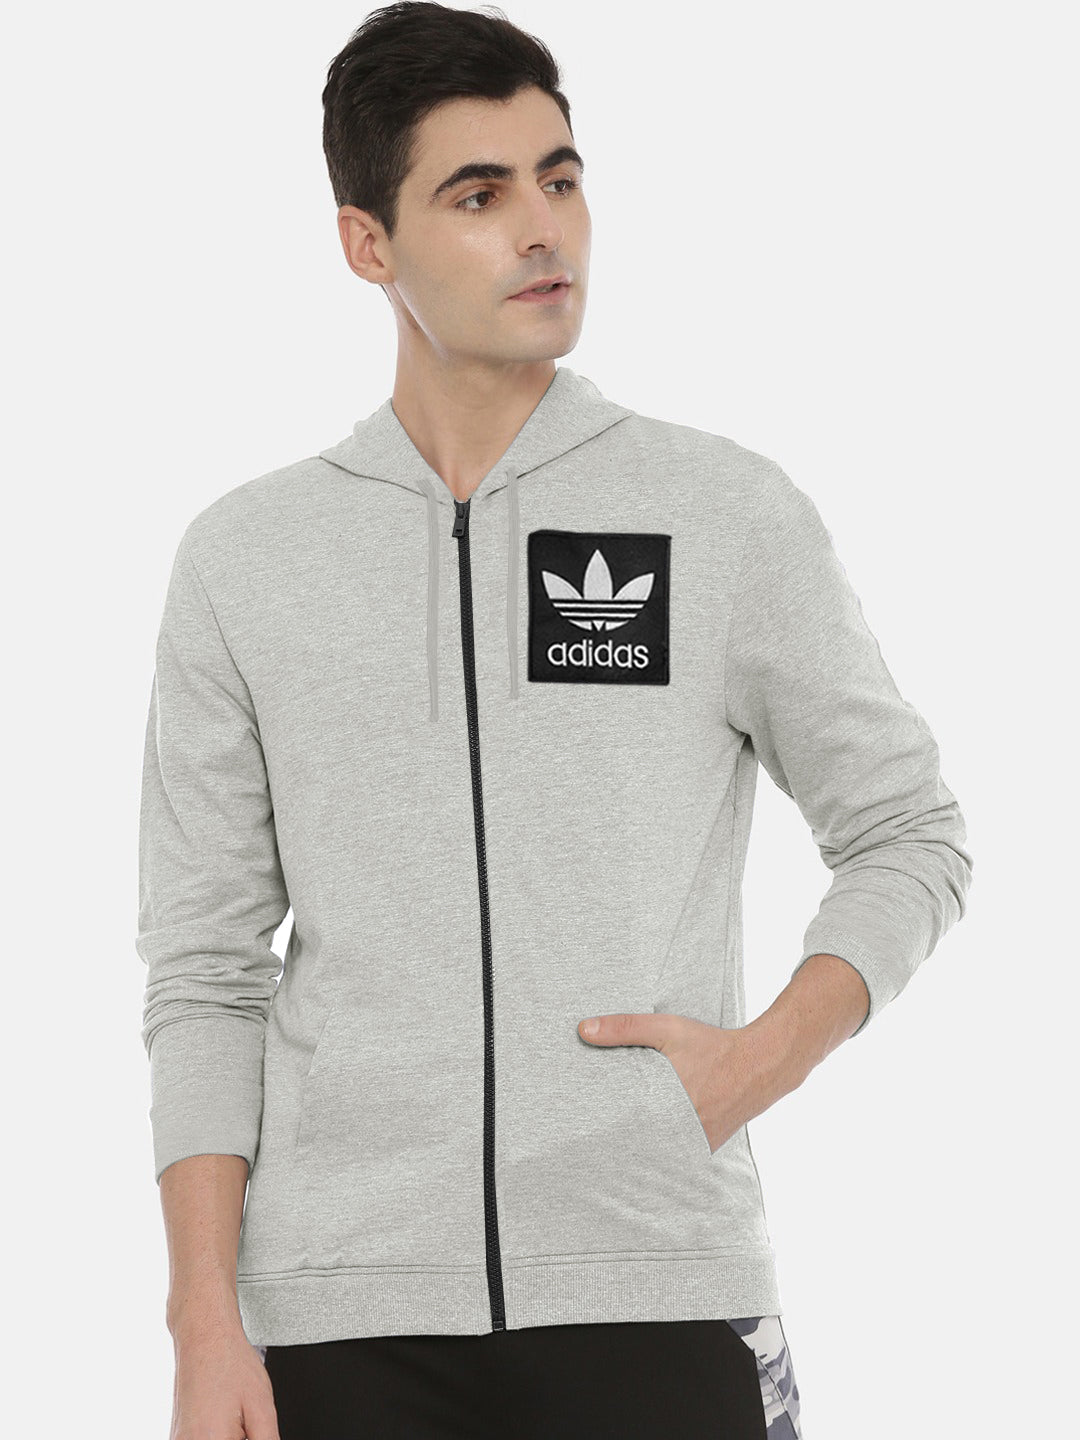 Adidas Fleece Zipper Hoodie For Men-Grey Melange-SP1213